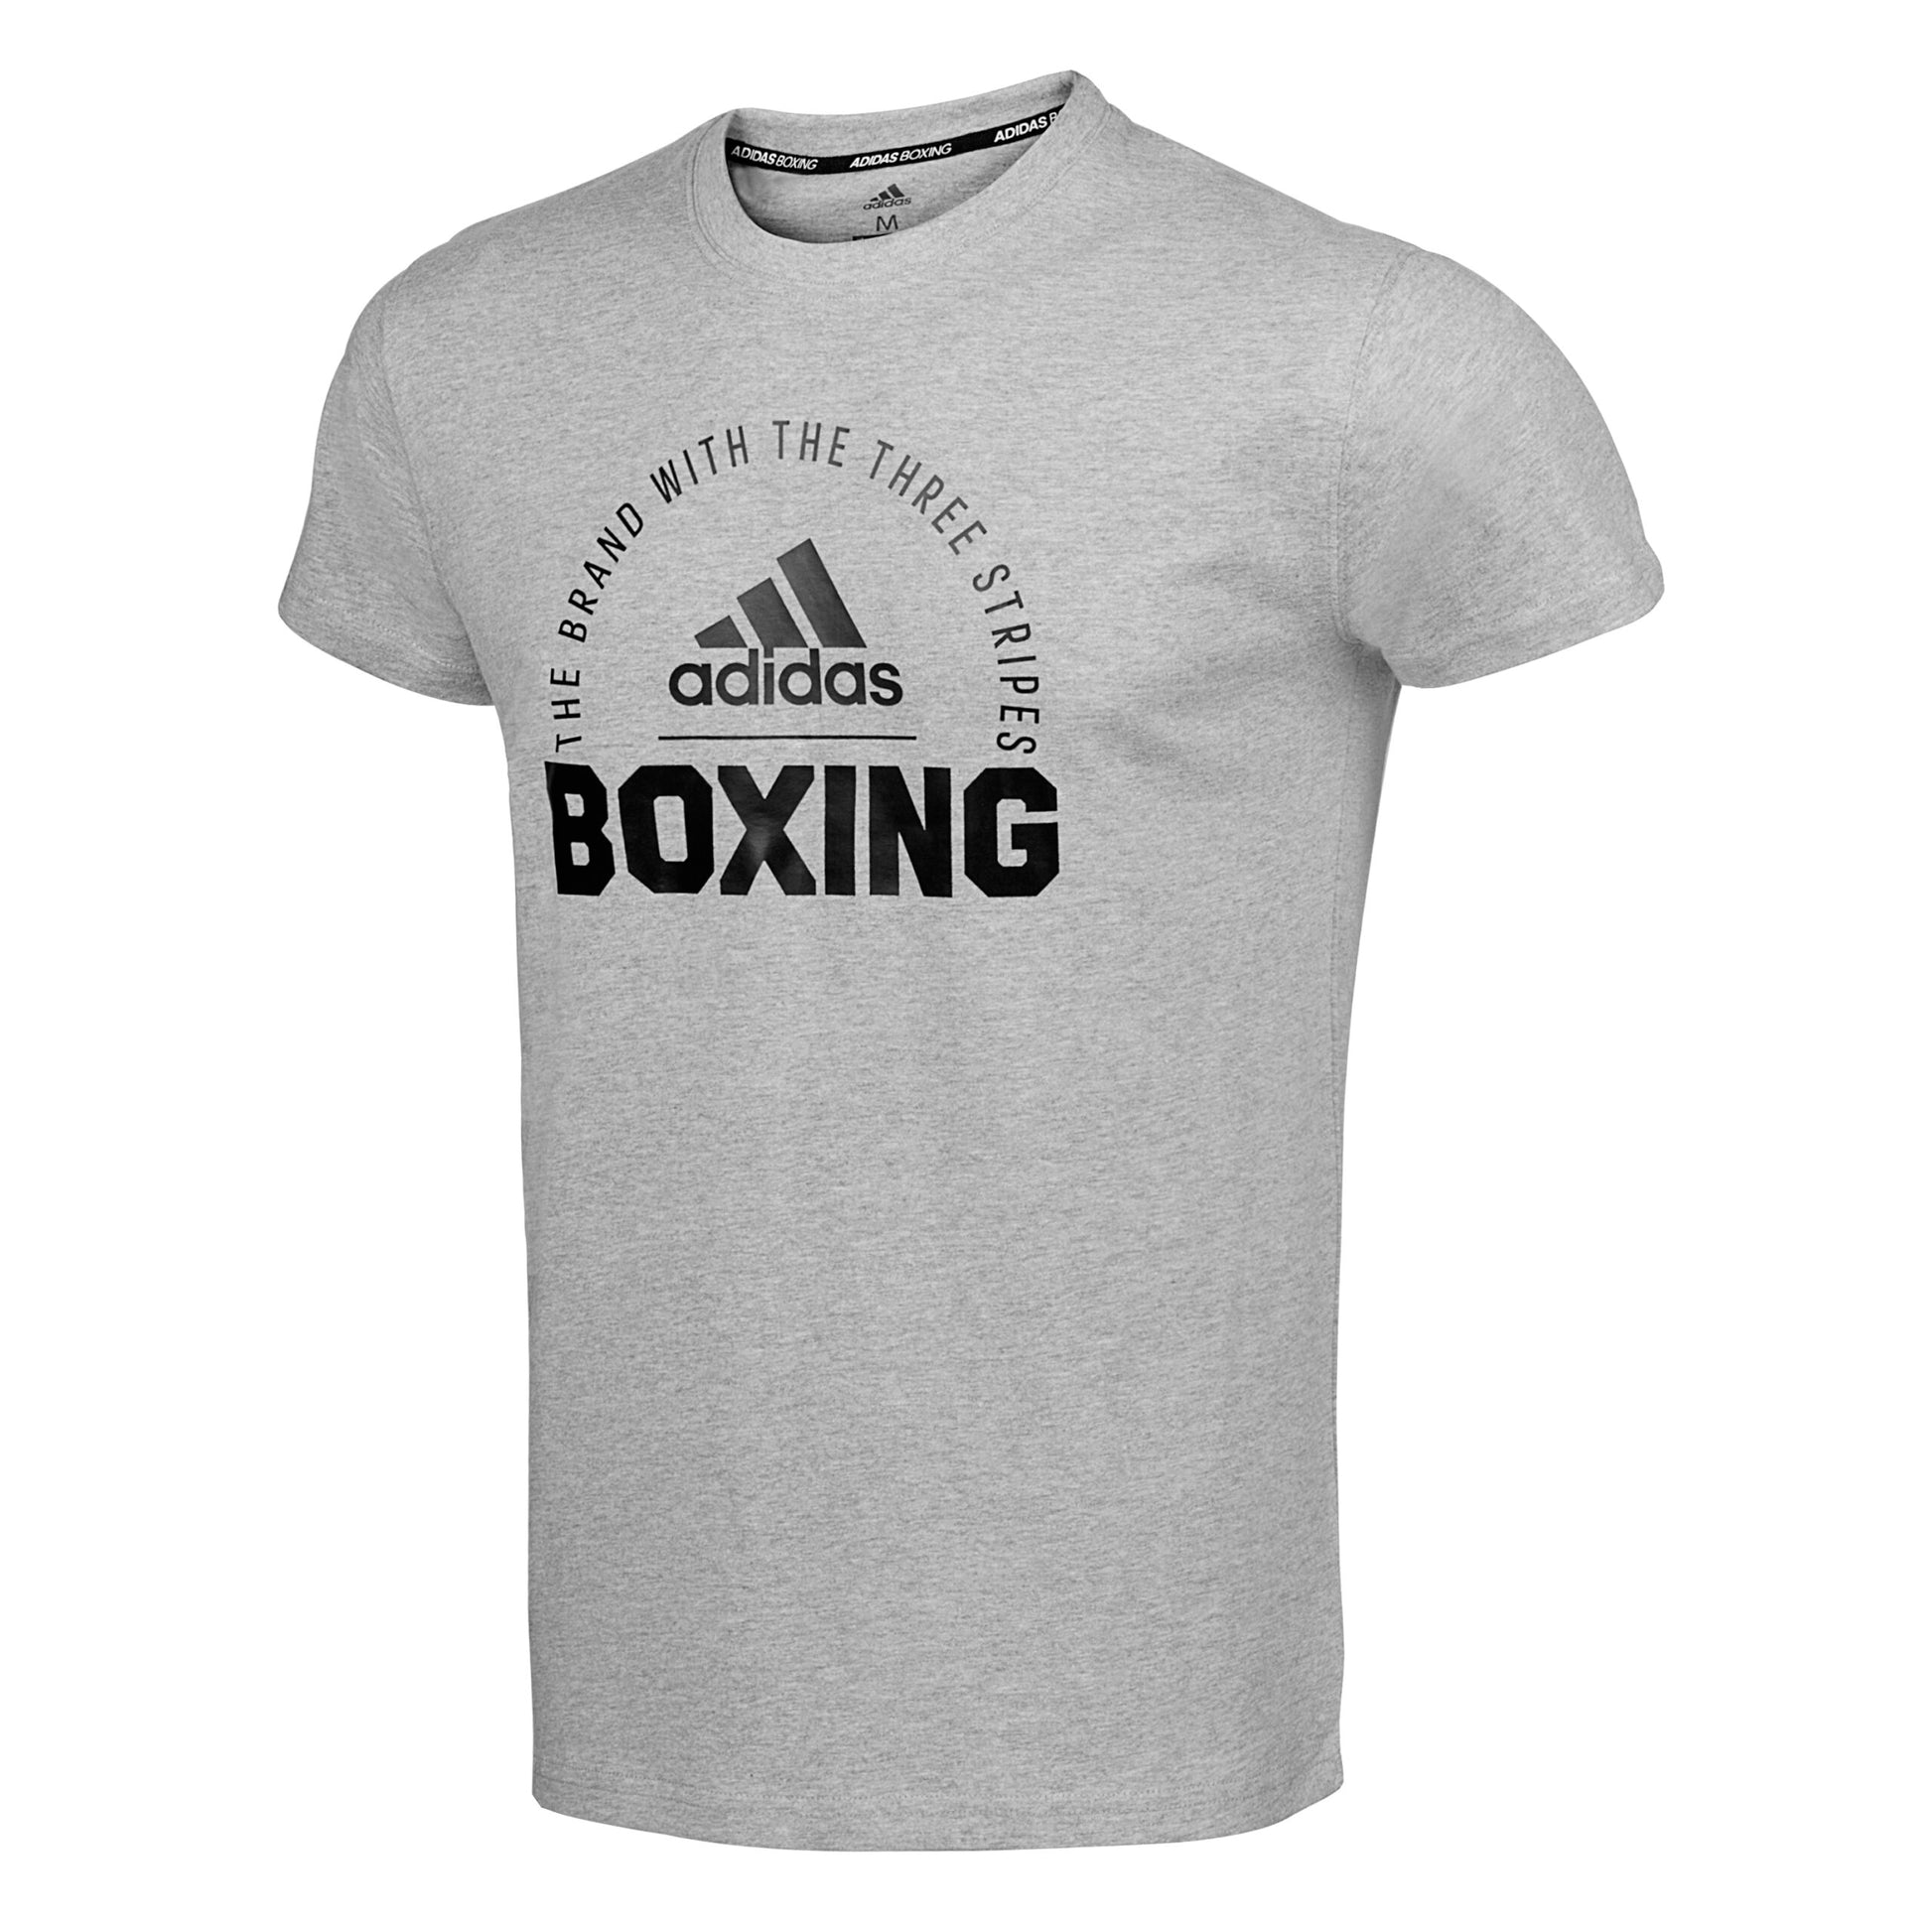 Clts21 B Adidas Boxing T Shirt Grey 02